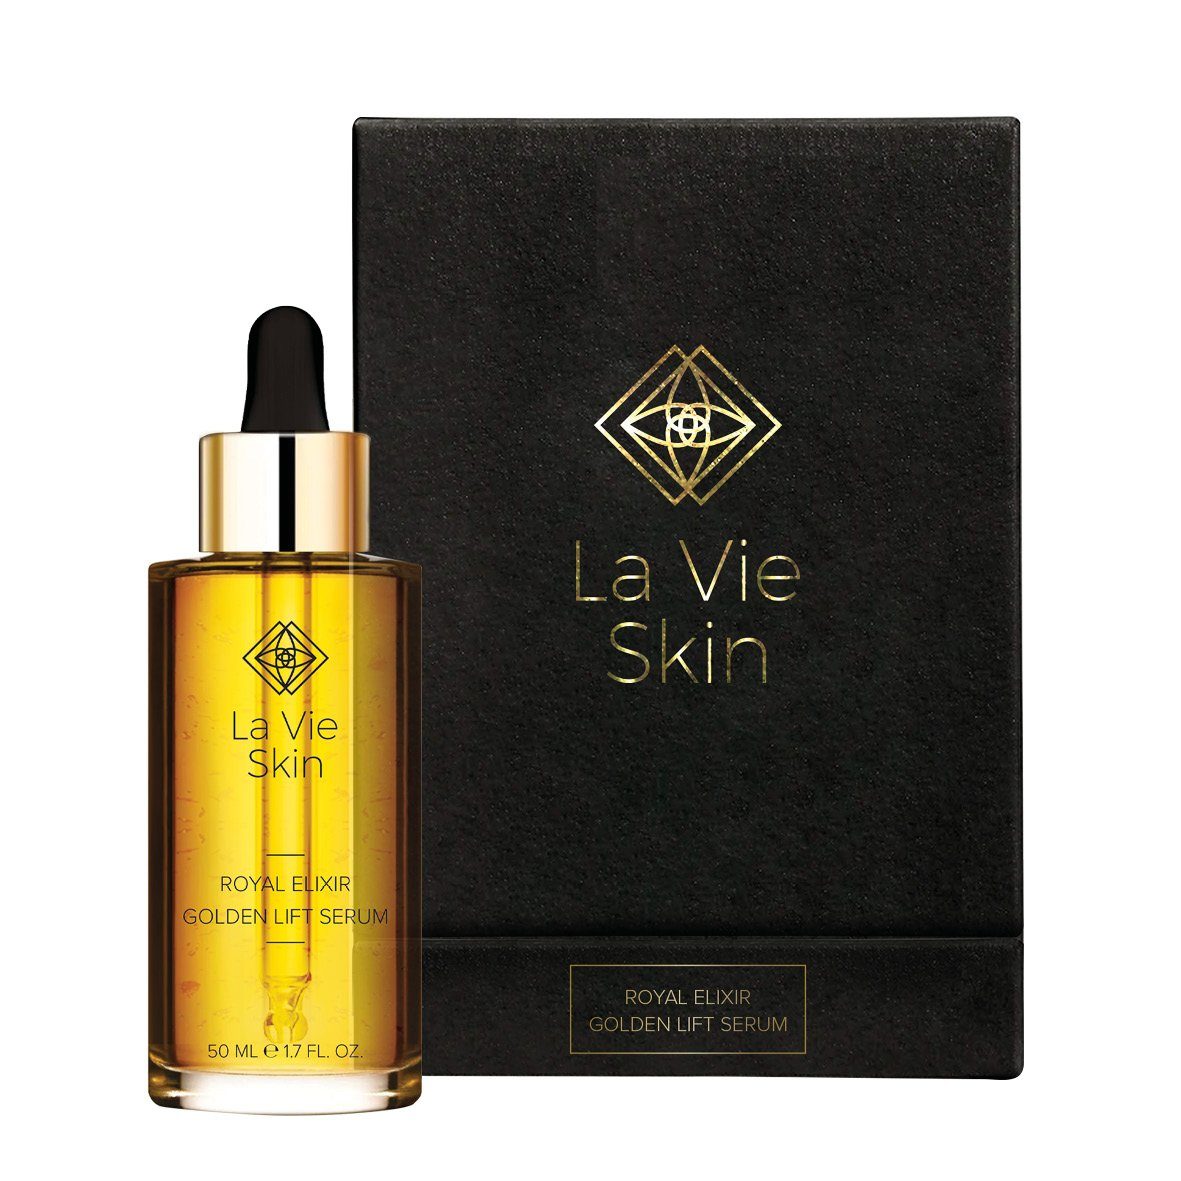 Royal Lifting Feuchtigkeitsspendend - Elixir Serum, Lift Gold Vie - Lipofilling Gesichtsserum 24K Golden La Skin -